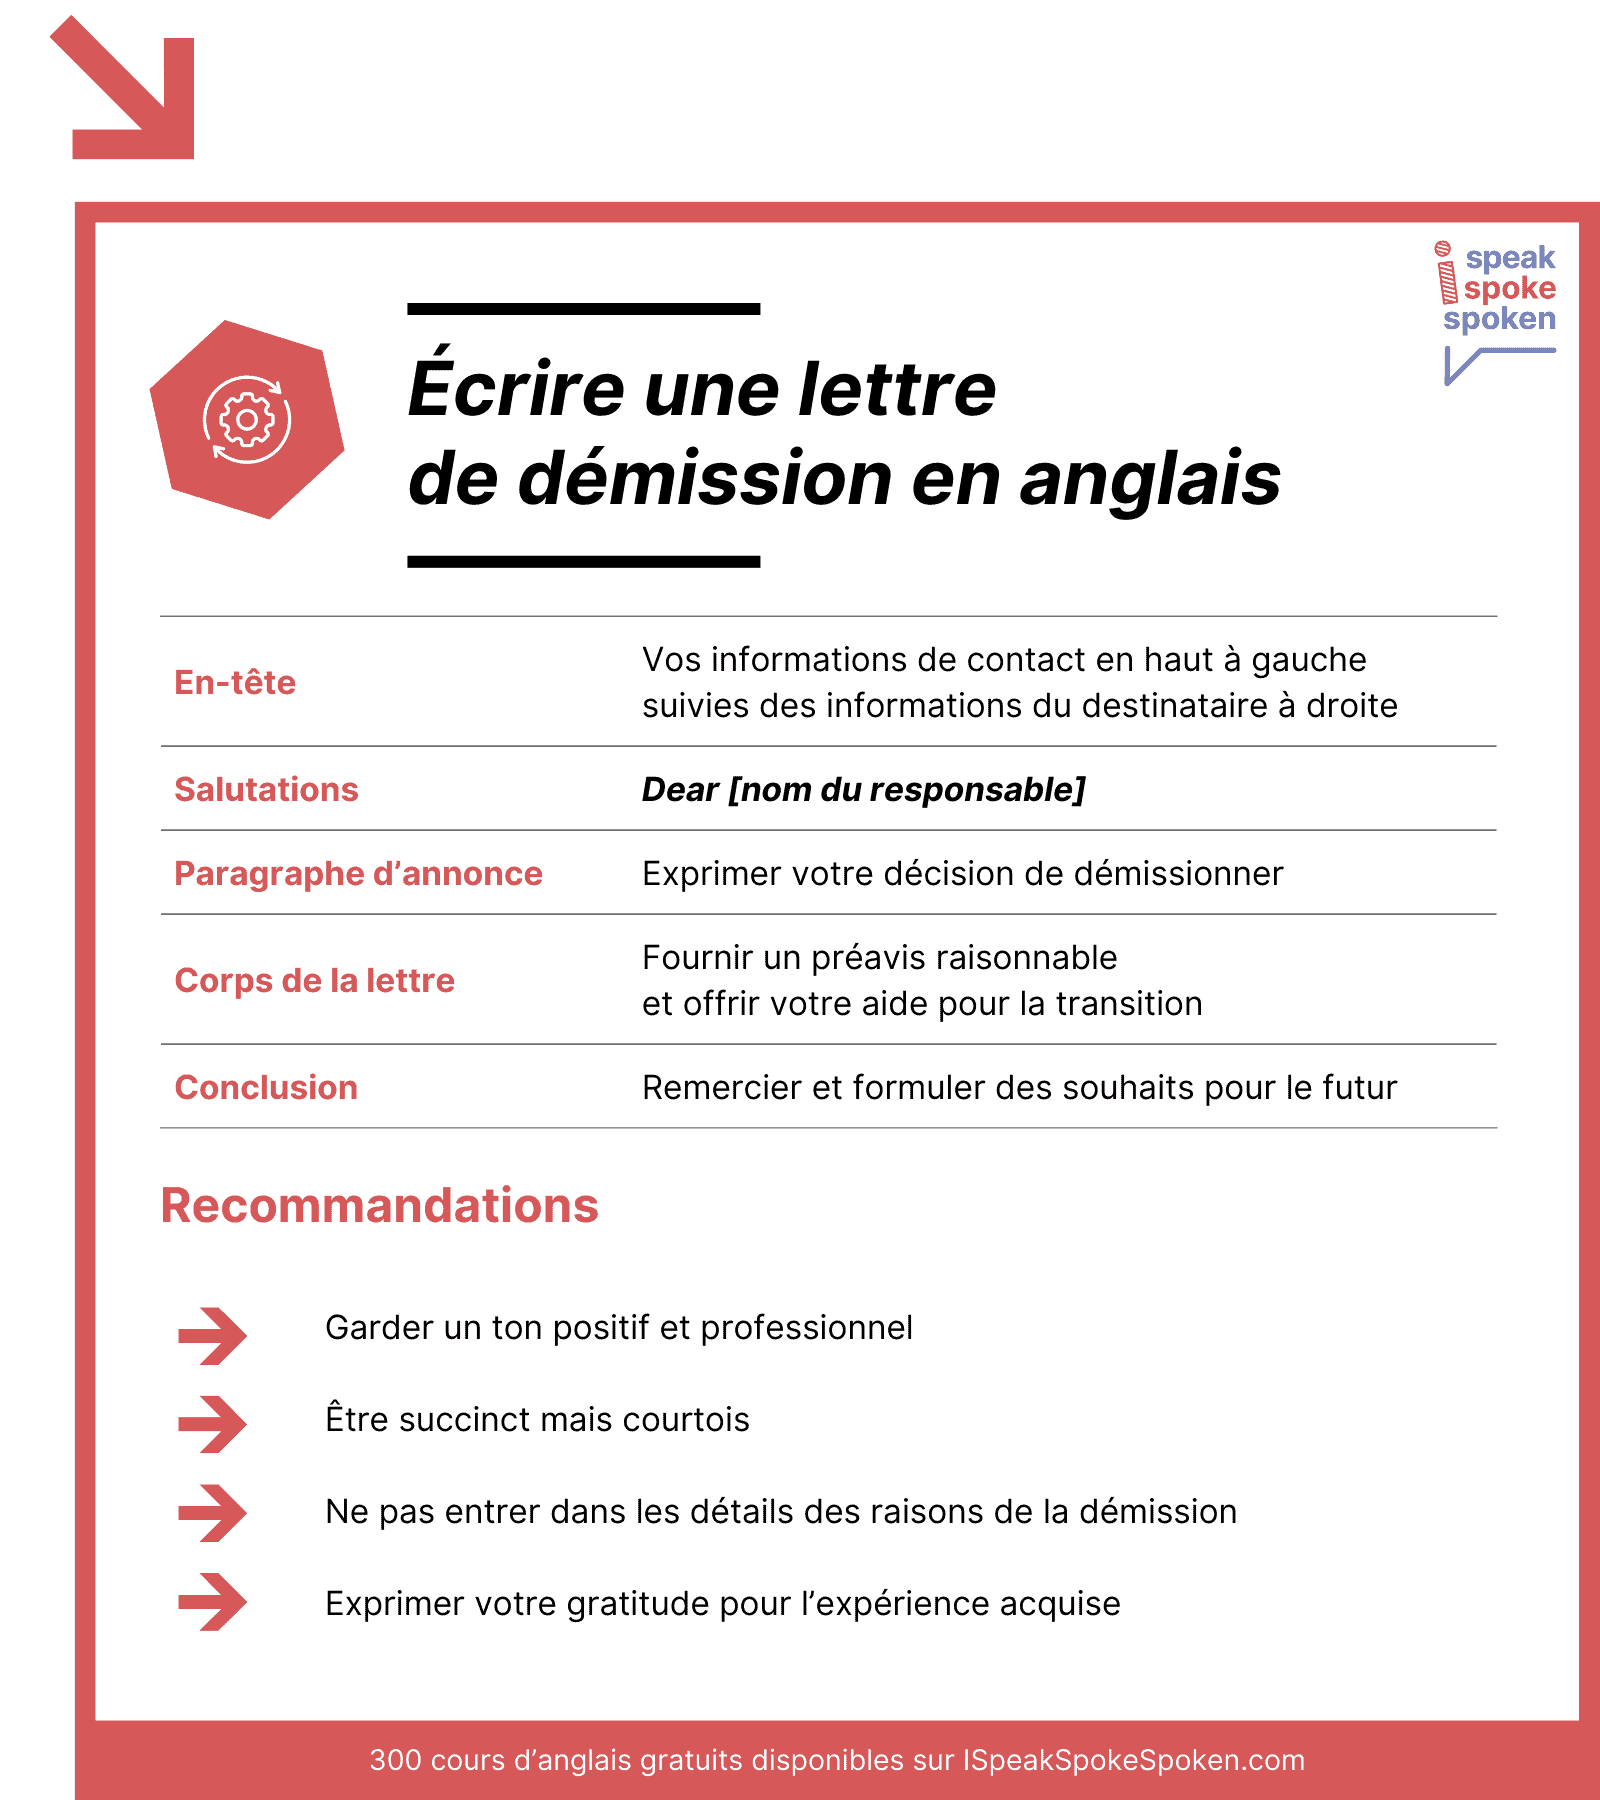 Structure et conseils pour écrire une lettre de démission en anglais